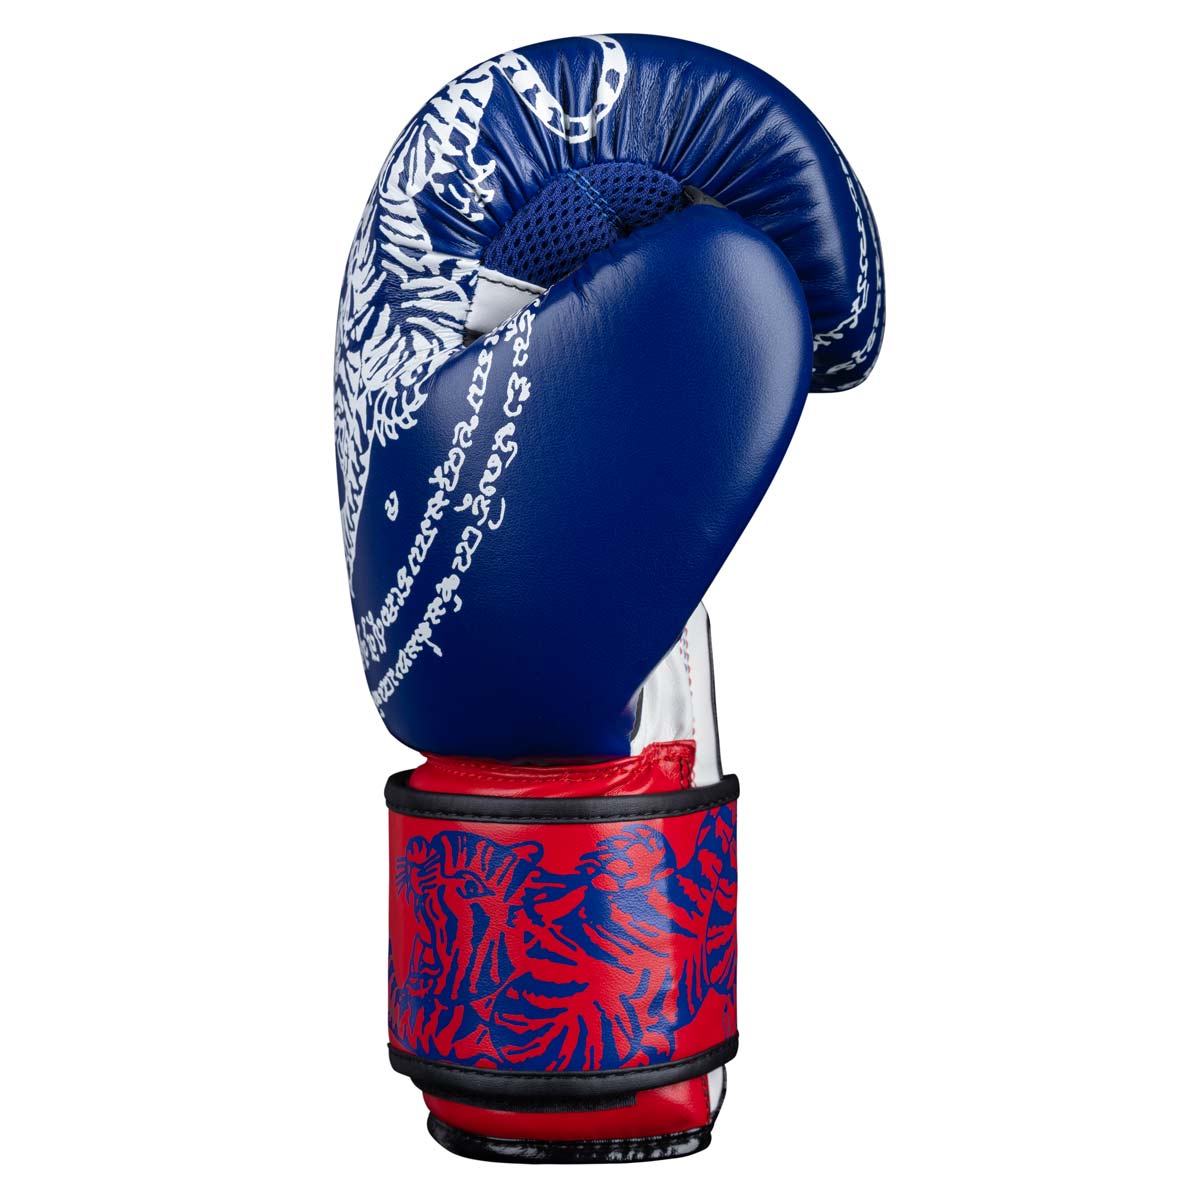 Die Phantom Muay Thai Boxhandschuhe verfügen über ein perfekte Passform um deine Hände in Training und Wettkampf perfekt zu schützen. 